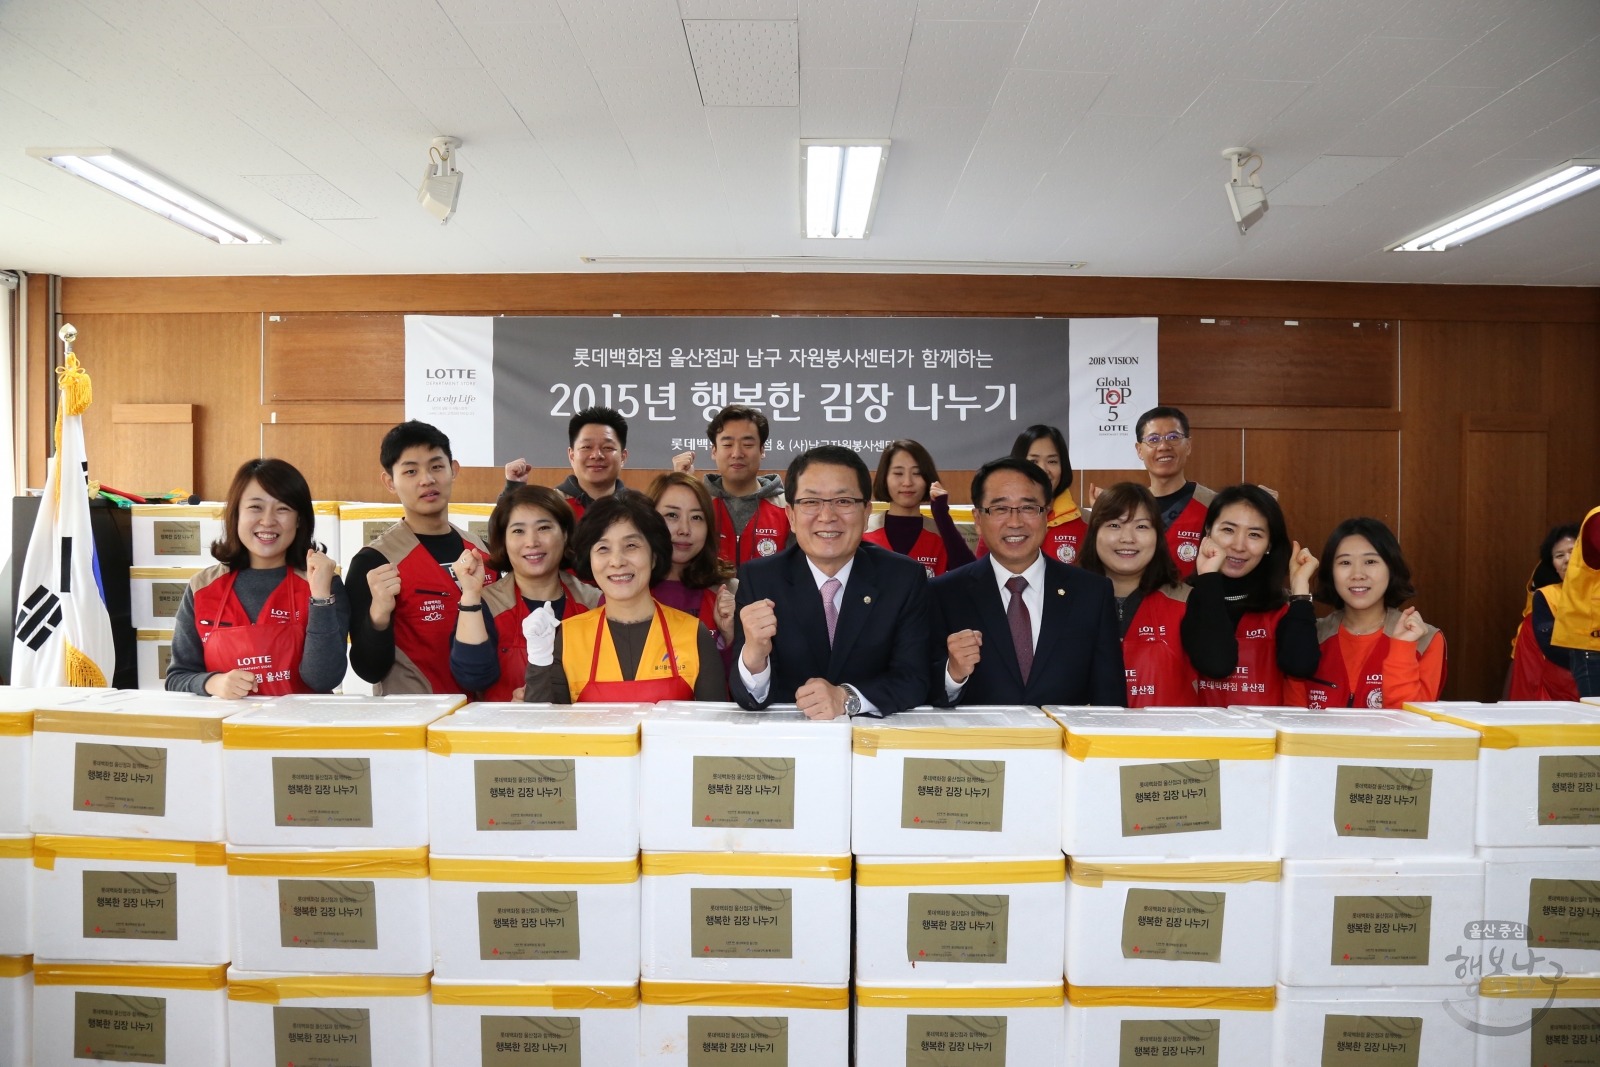 롯데백화점 울산점과 남구 자원봉사센터가 함께하는 2015년 행복한 김장 나누기 의 사진